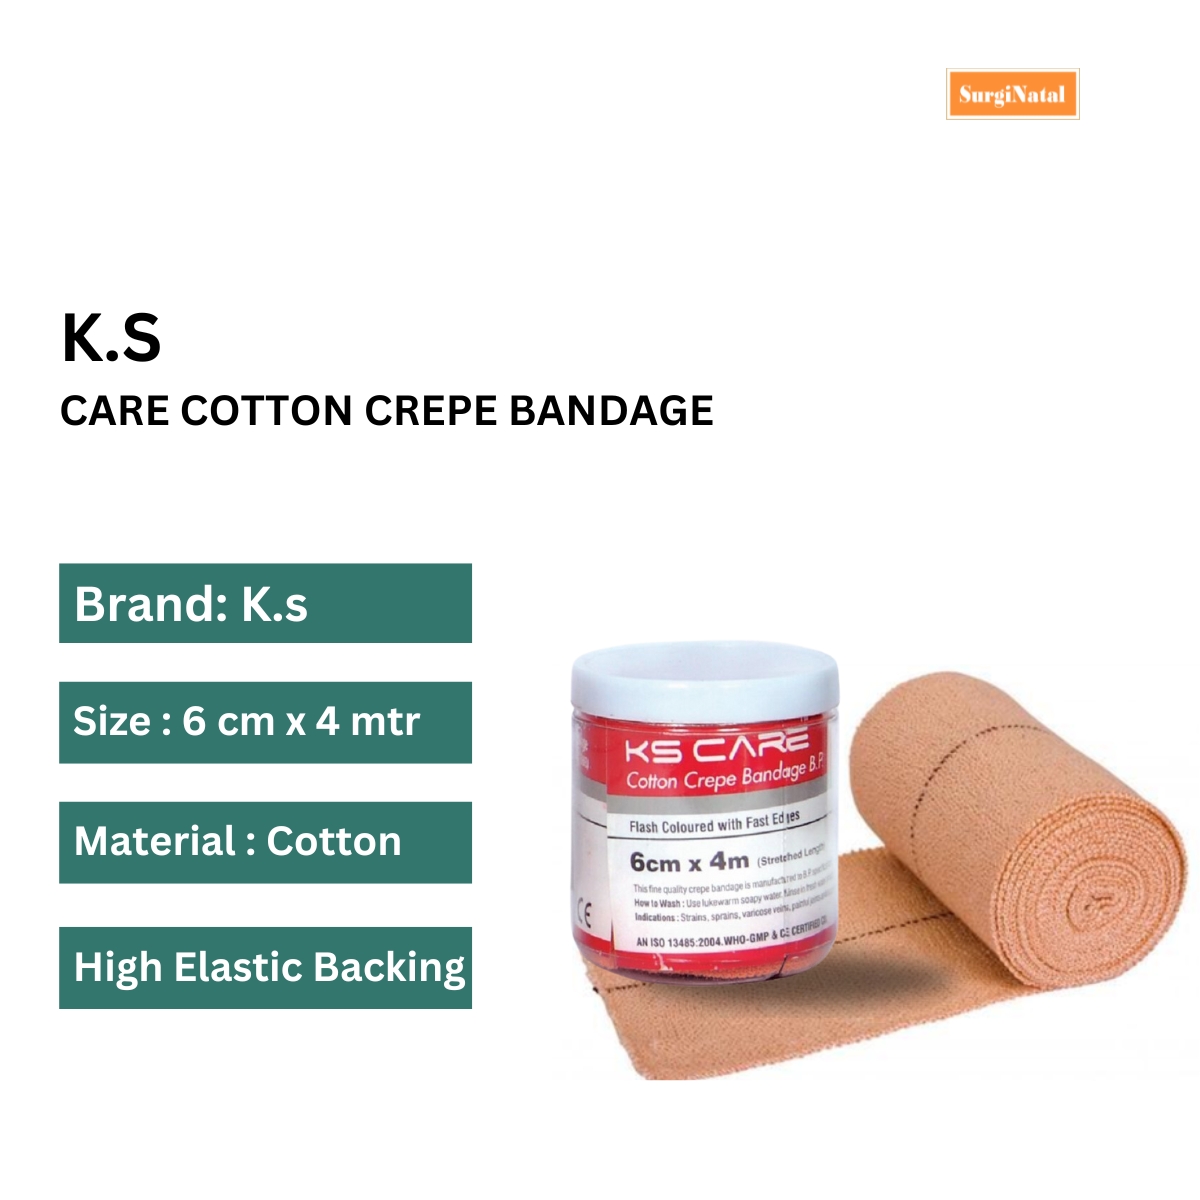 k. s. care cotton crepe bandage 6 cm x 4 mtr